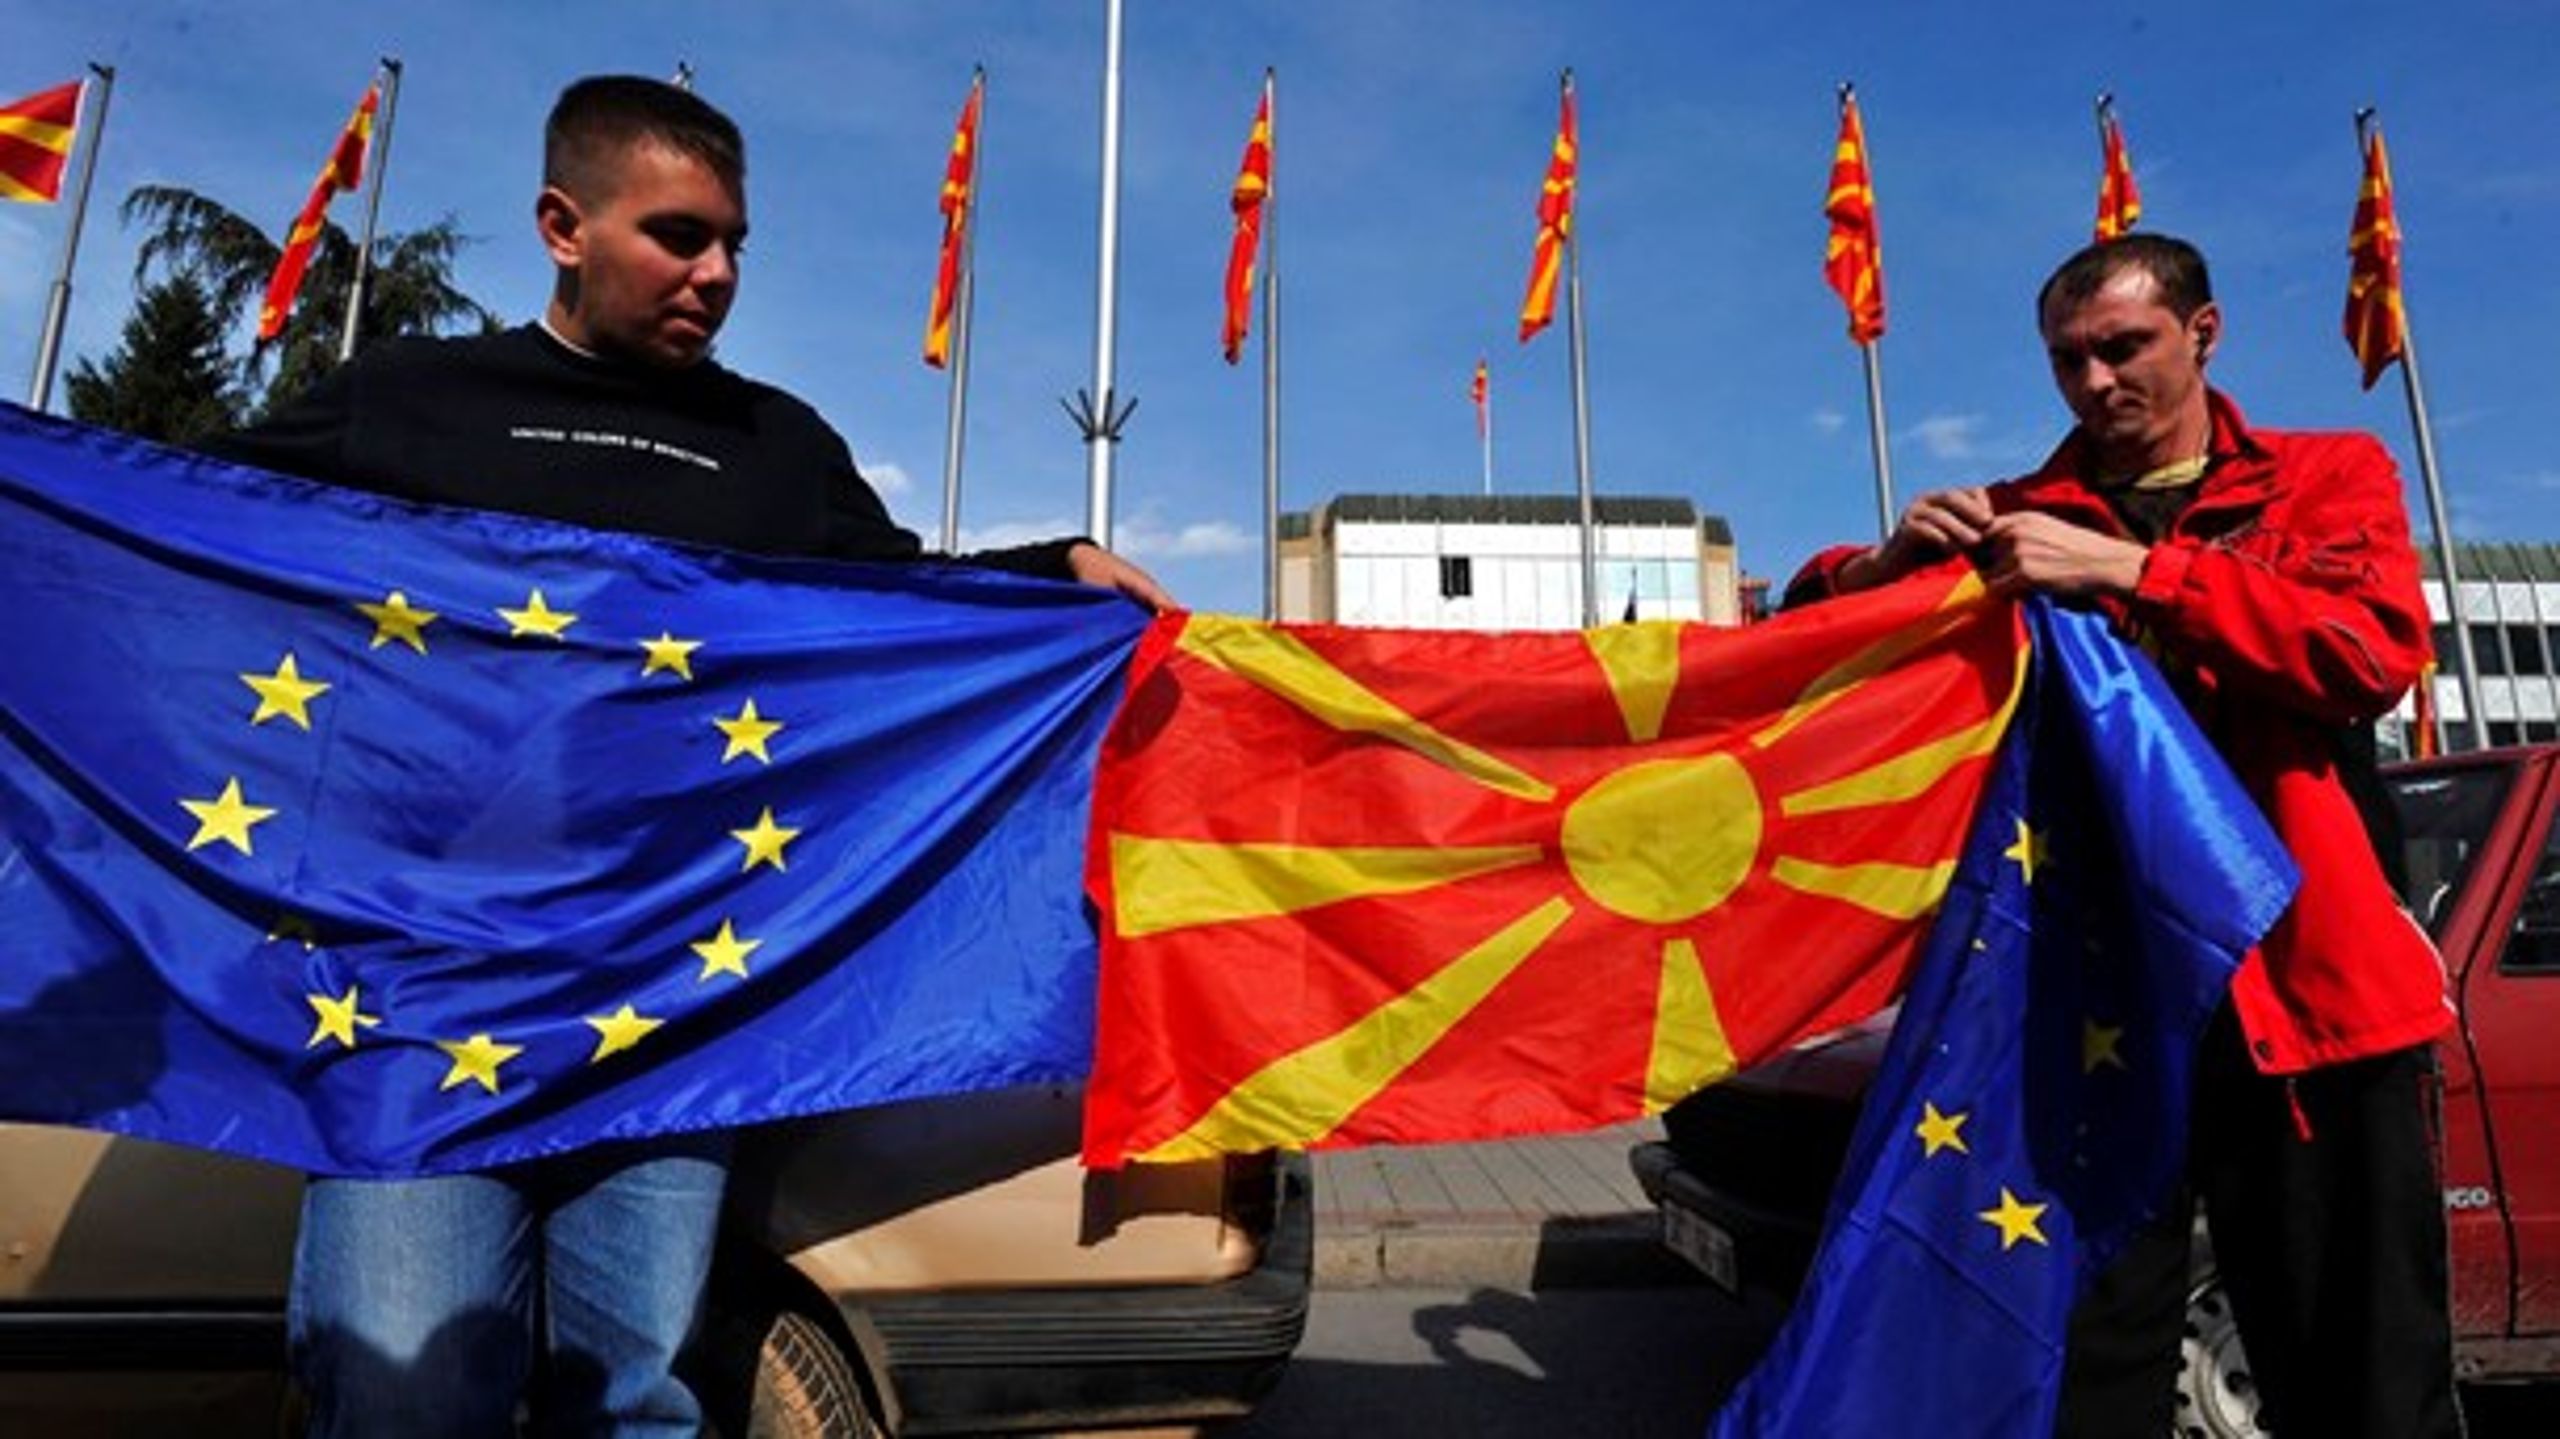 Da Kommissionen første gang foreslog, at EU skulle påbegynde optagelsesforhandlinger med Makedonien i 2009, førte det til glade billeder fra landets hovedstad, Skopje. Men spørger man danskerne i dag, er 60 procent modstandere af en udvidelse af unionen på Balkan.